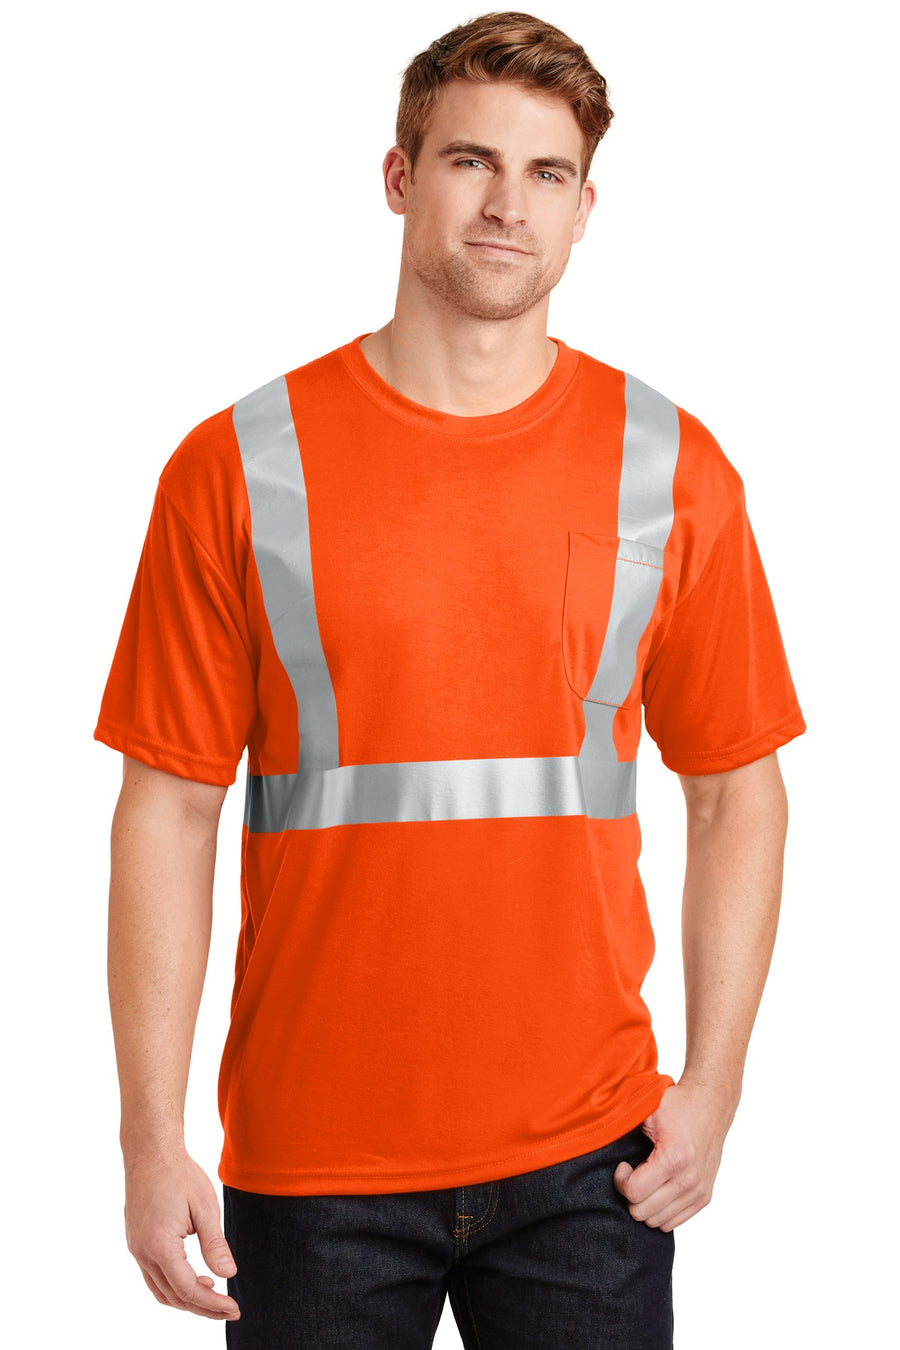 CornerStone - ANSI 107 Class 2 Safety T-Shirt.